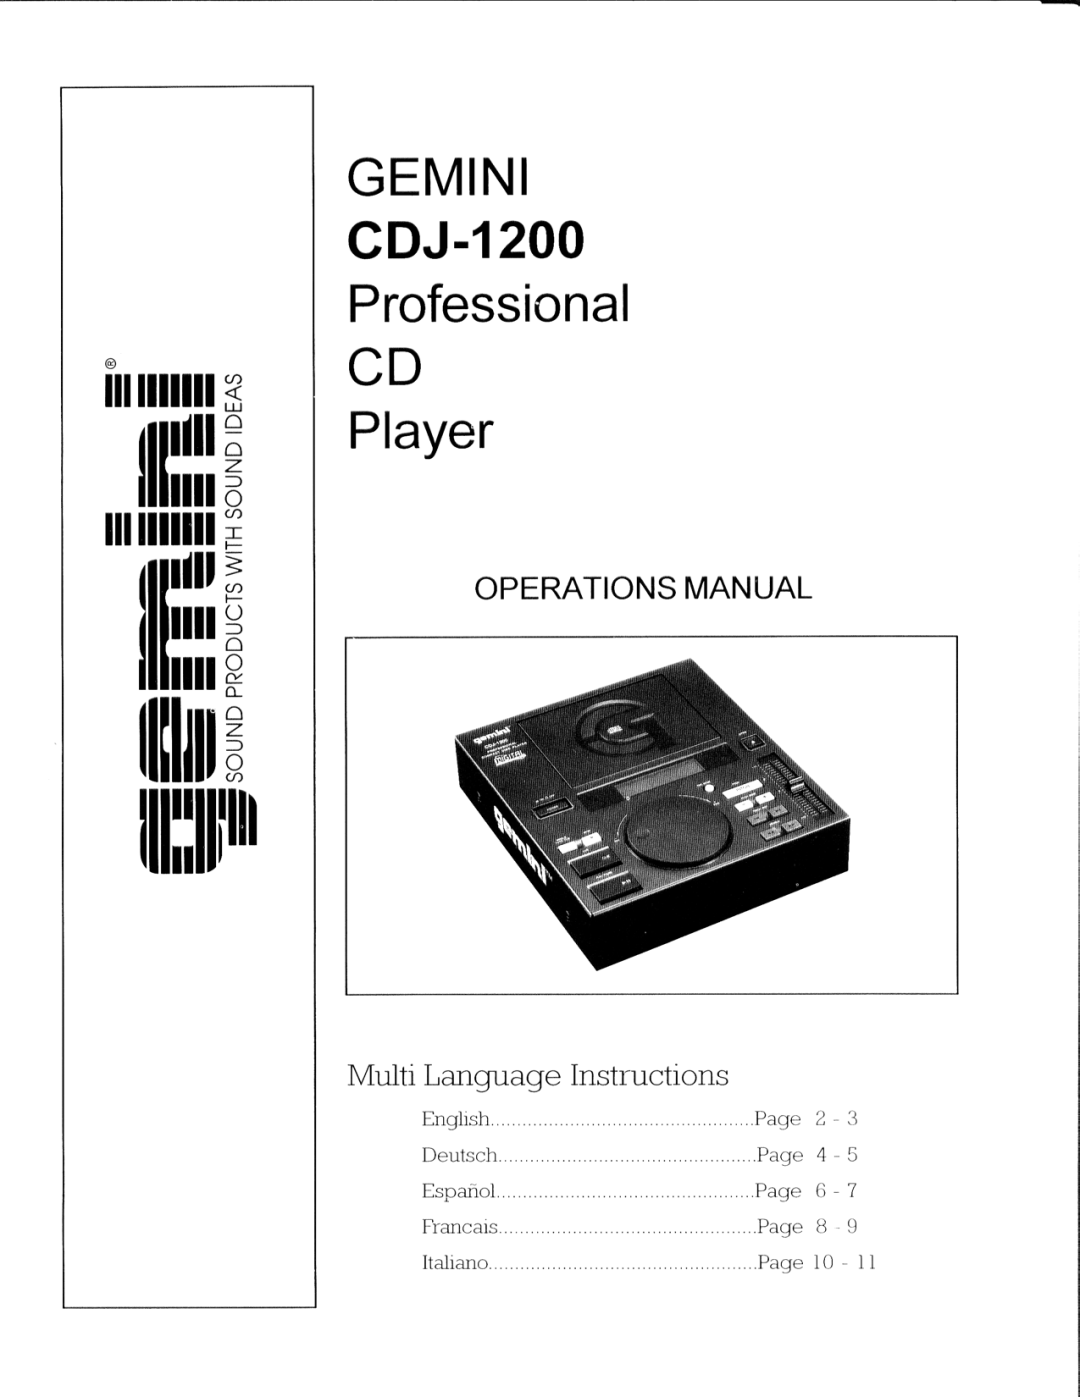 Gemini CDJ-1200 manual 